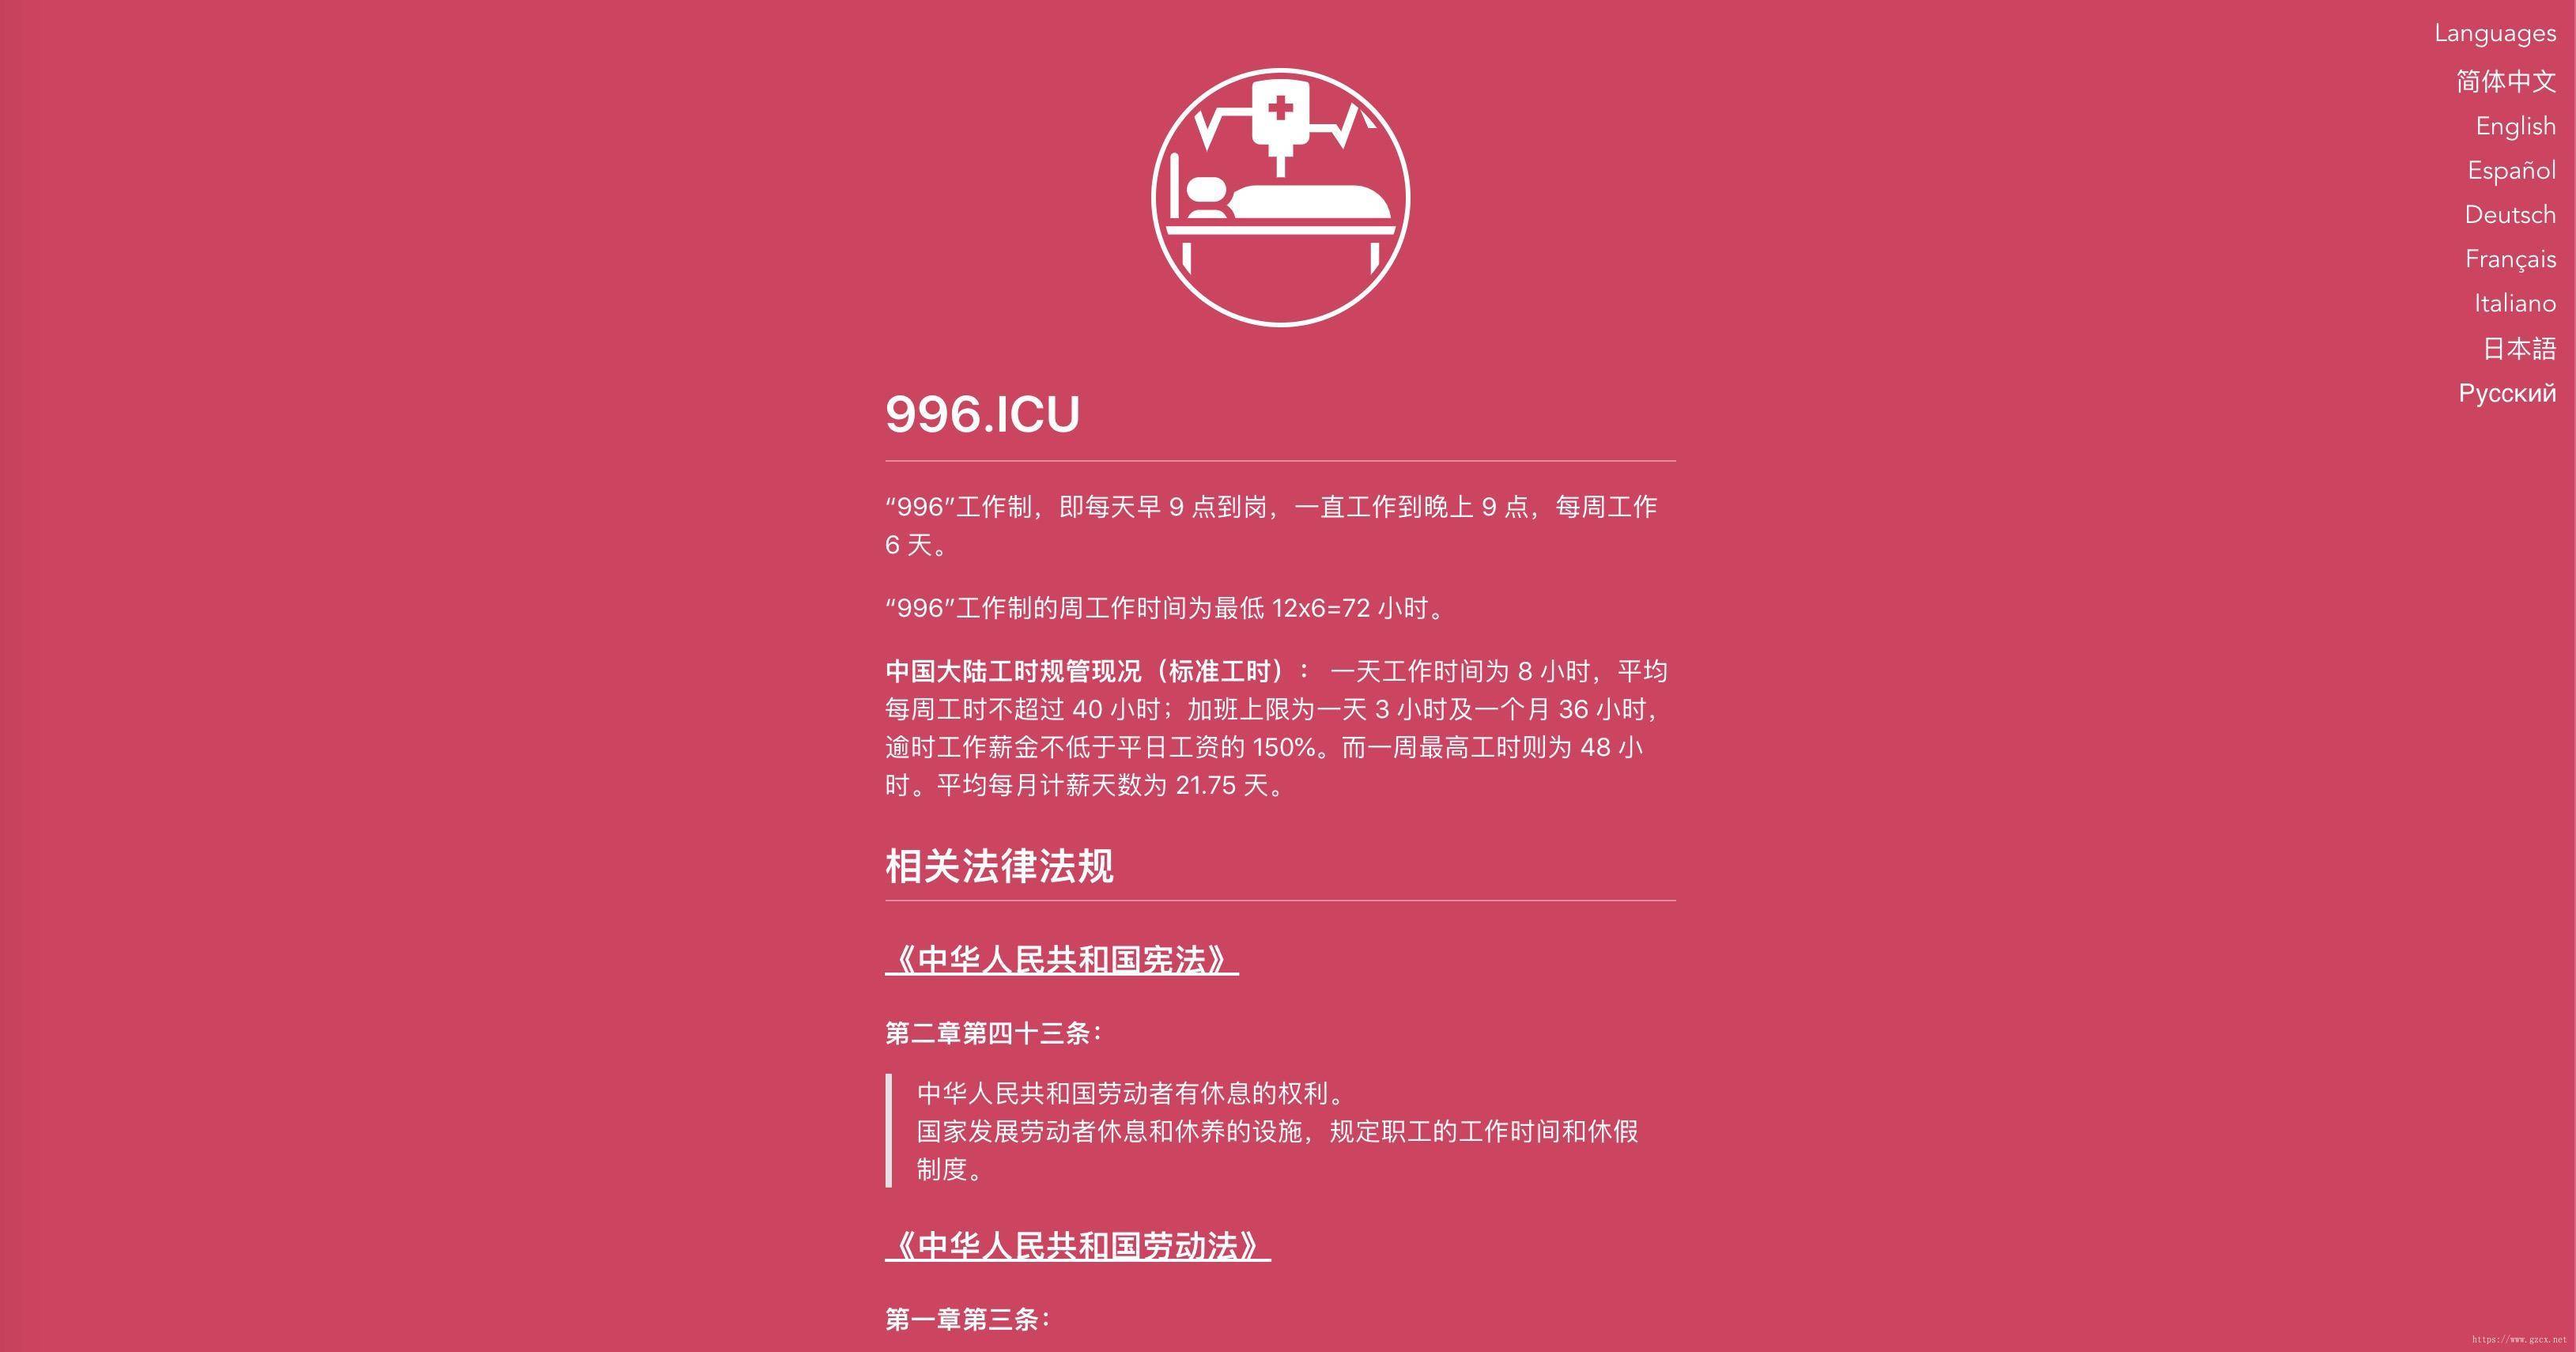 996.ICU-website